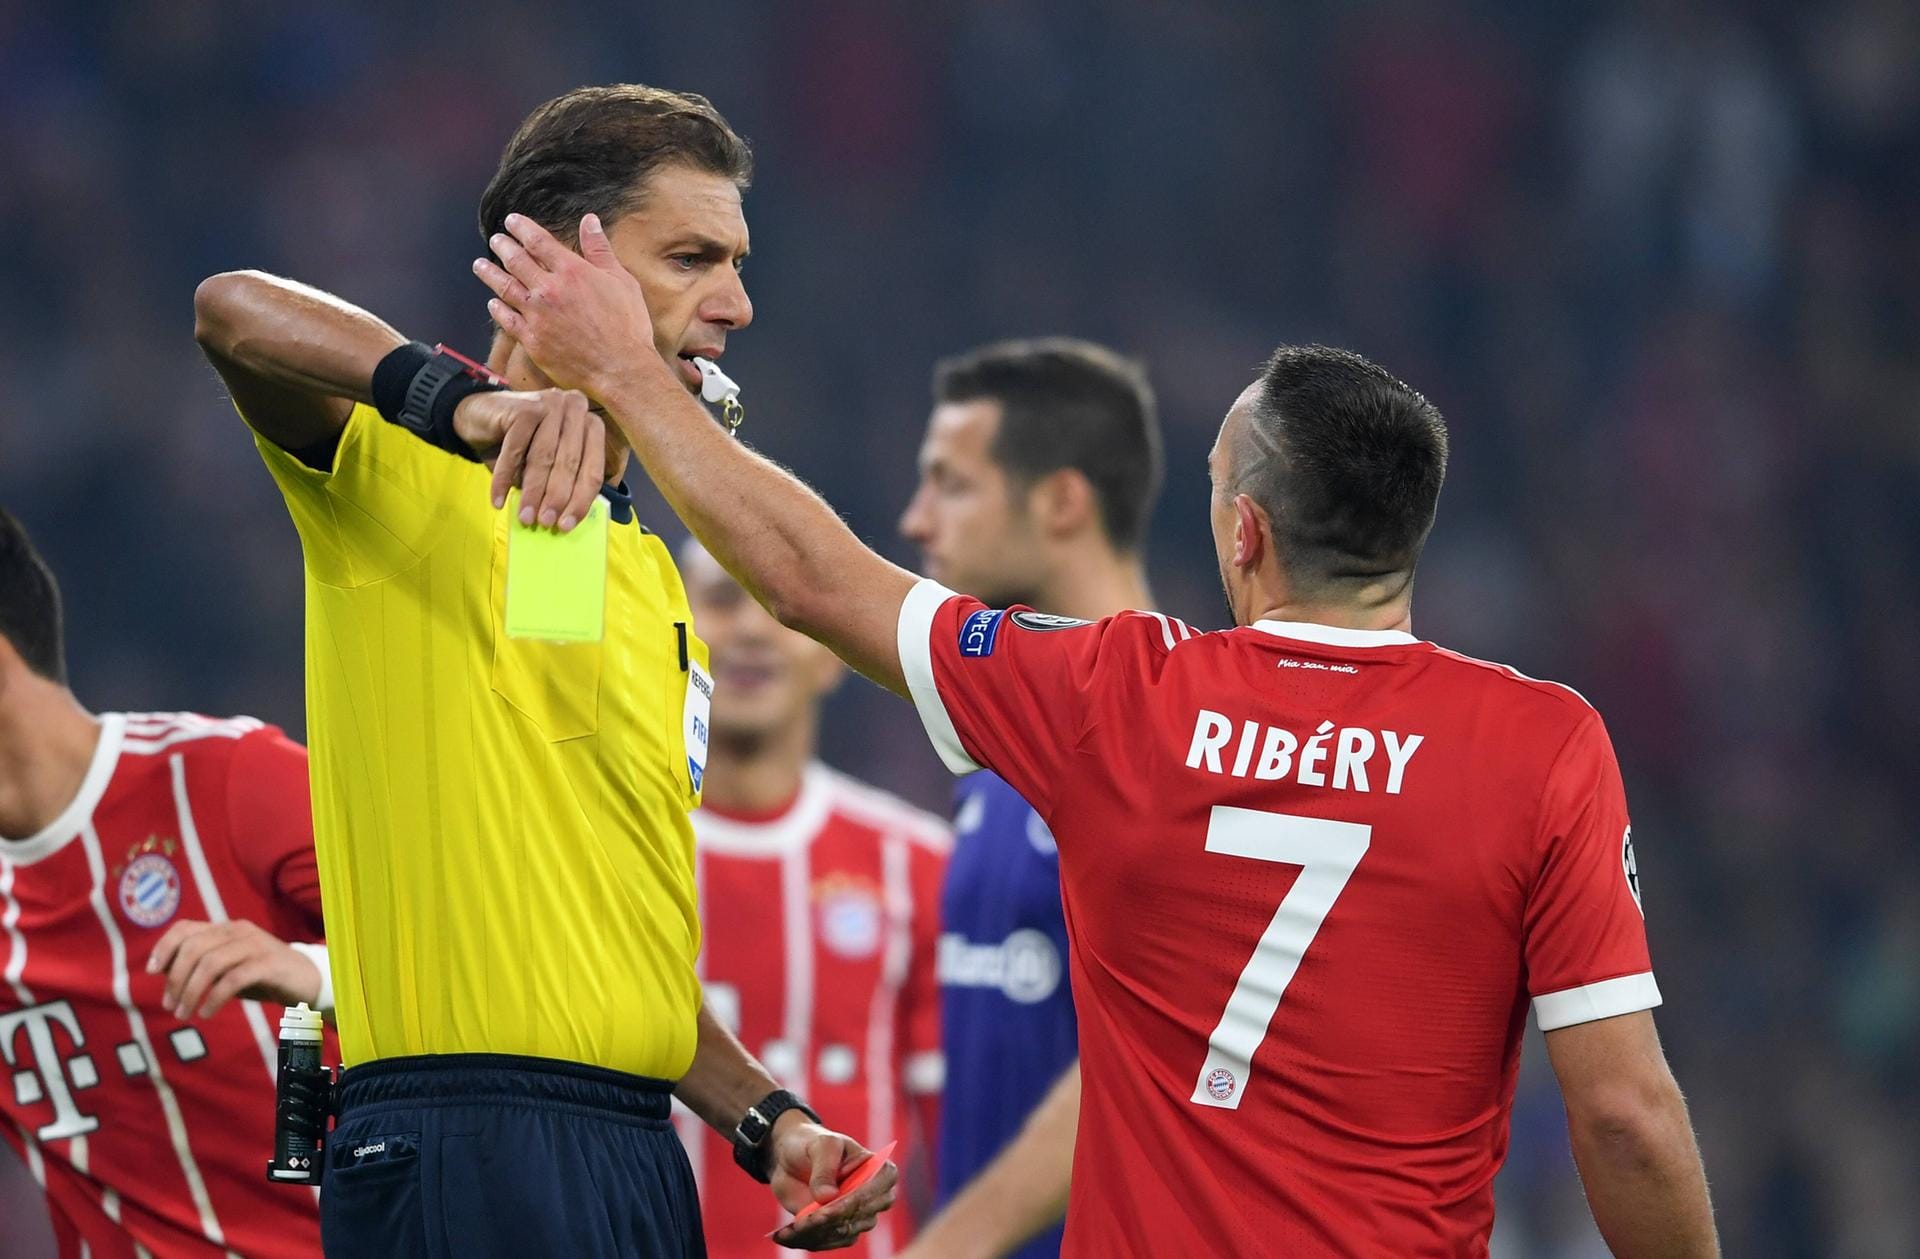 Beim 3:0-Sieg gegen Anderlecht zum Auftakt der CL-Saison 2017/18 reklamiert Ribéry heftig und sieht Gelb. Danach greift er Schiedsrichter Paolo Tagliavento ins Gesicht, kommt aber um einen Platzverweis herum.